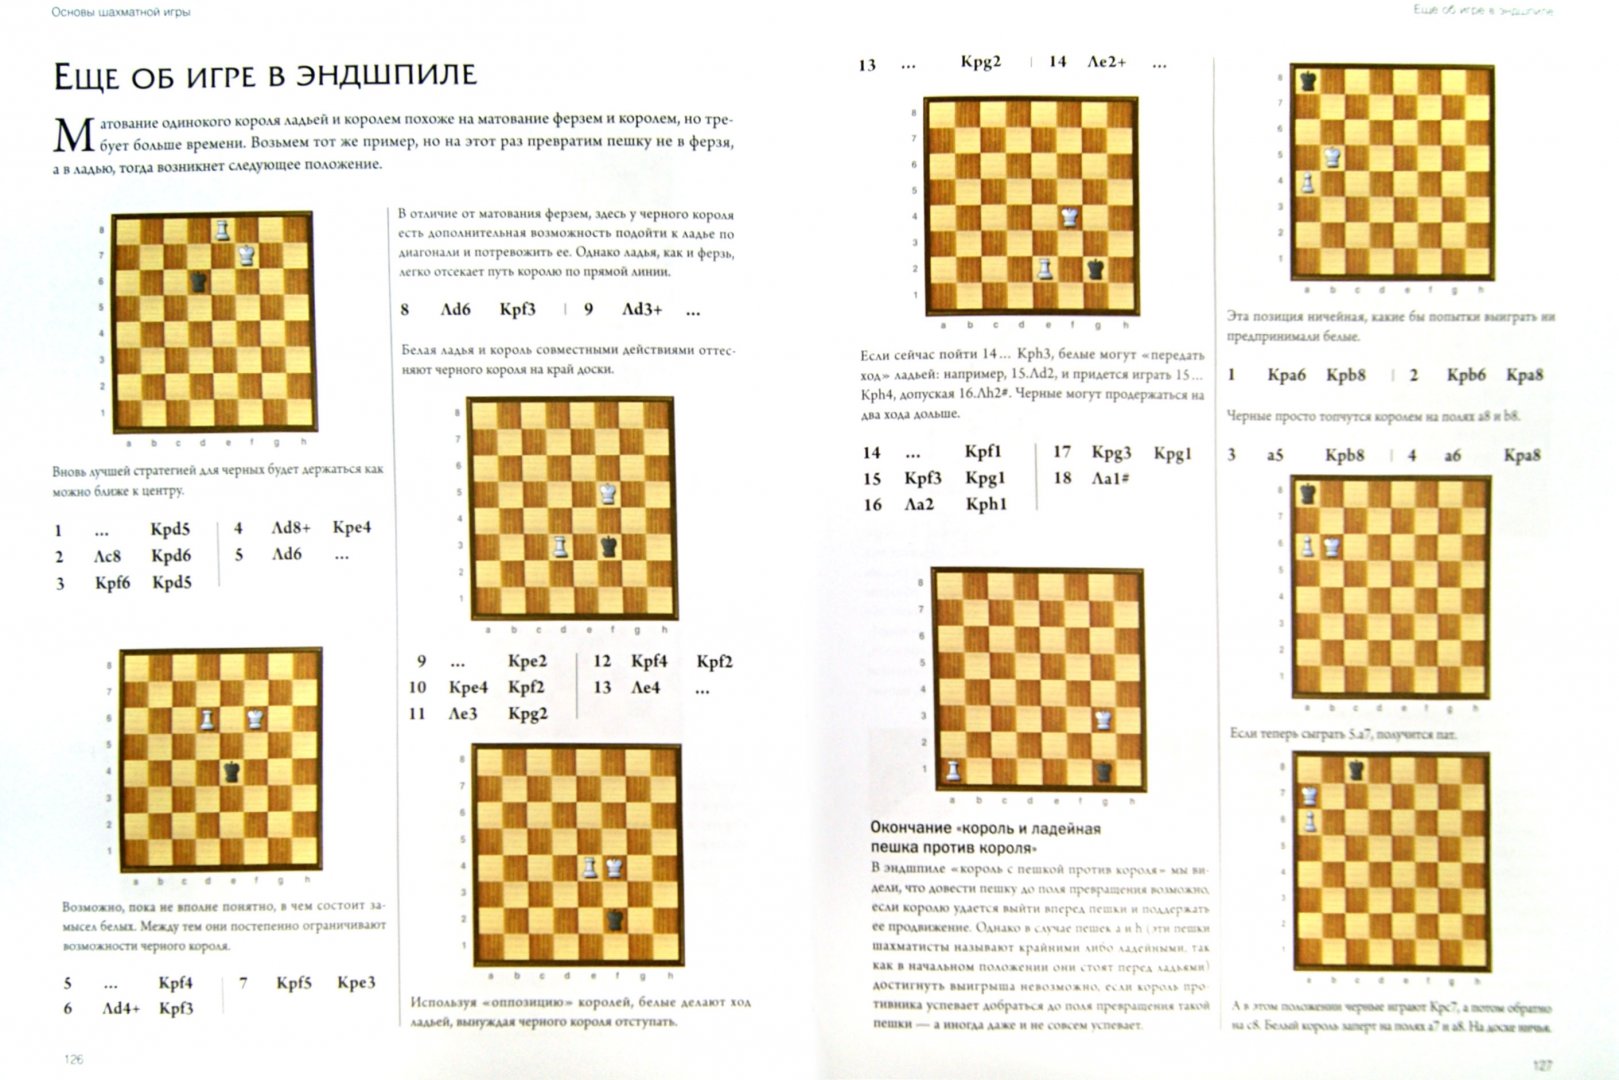 Иллюстрация 1 из 14 для Шахматы. История, правила, навыки и тактики - Джон Сондерс | Лабиринт - книги. Источник: Лабиринт